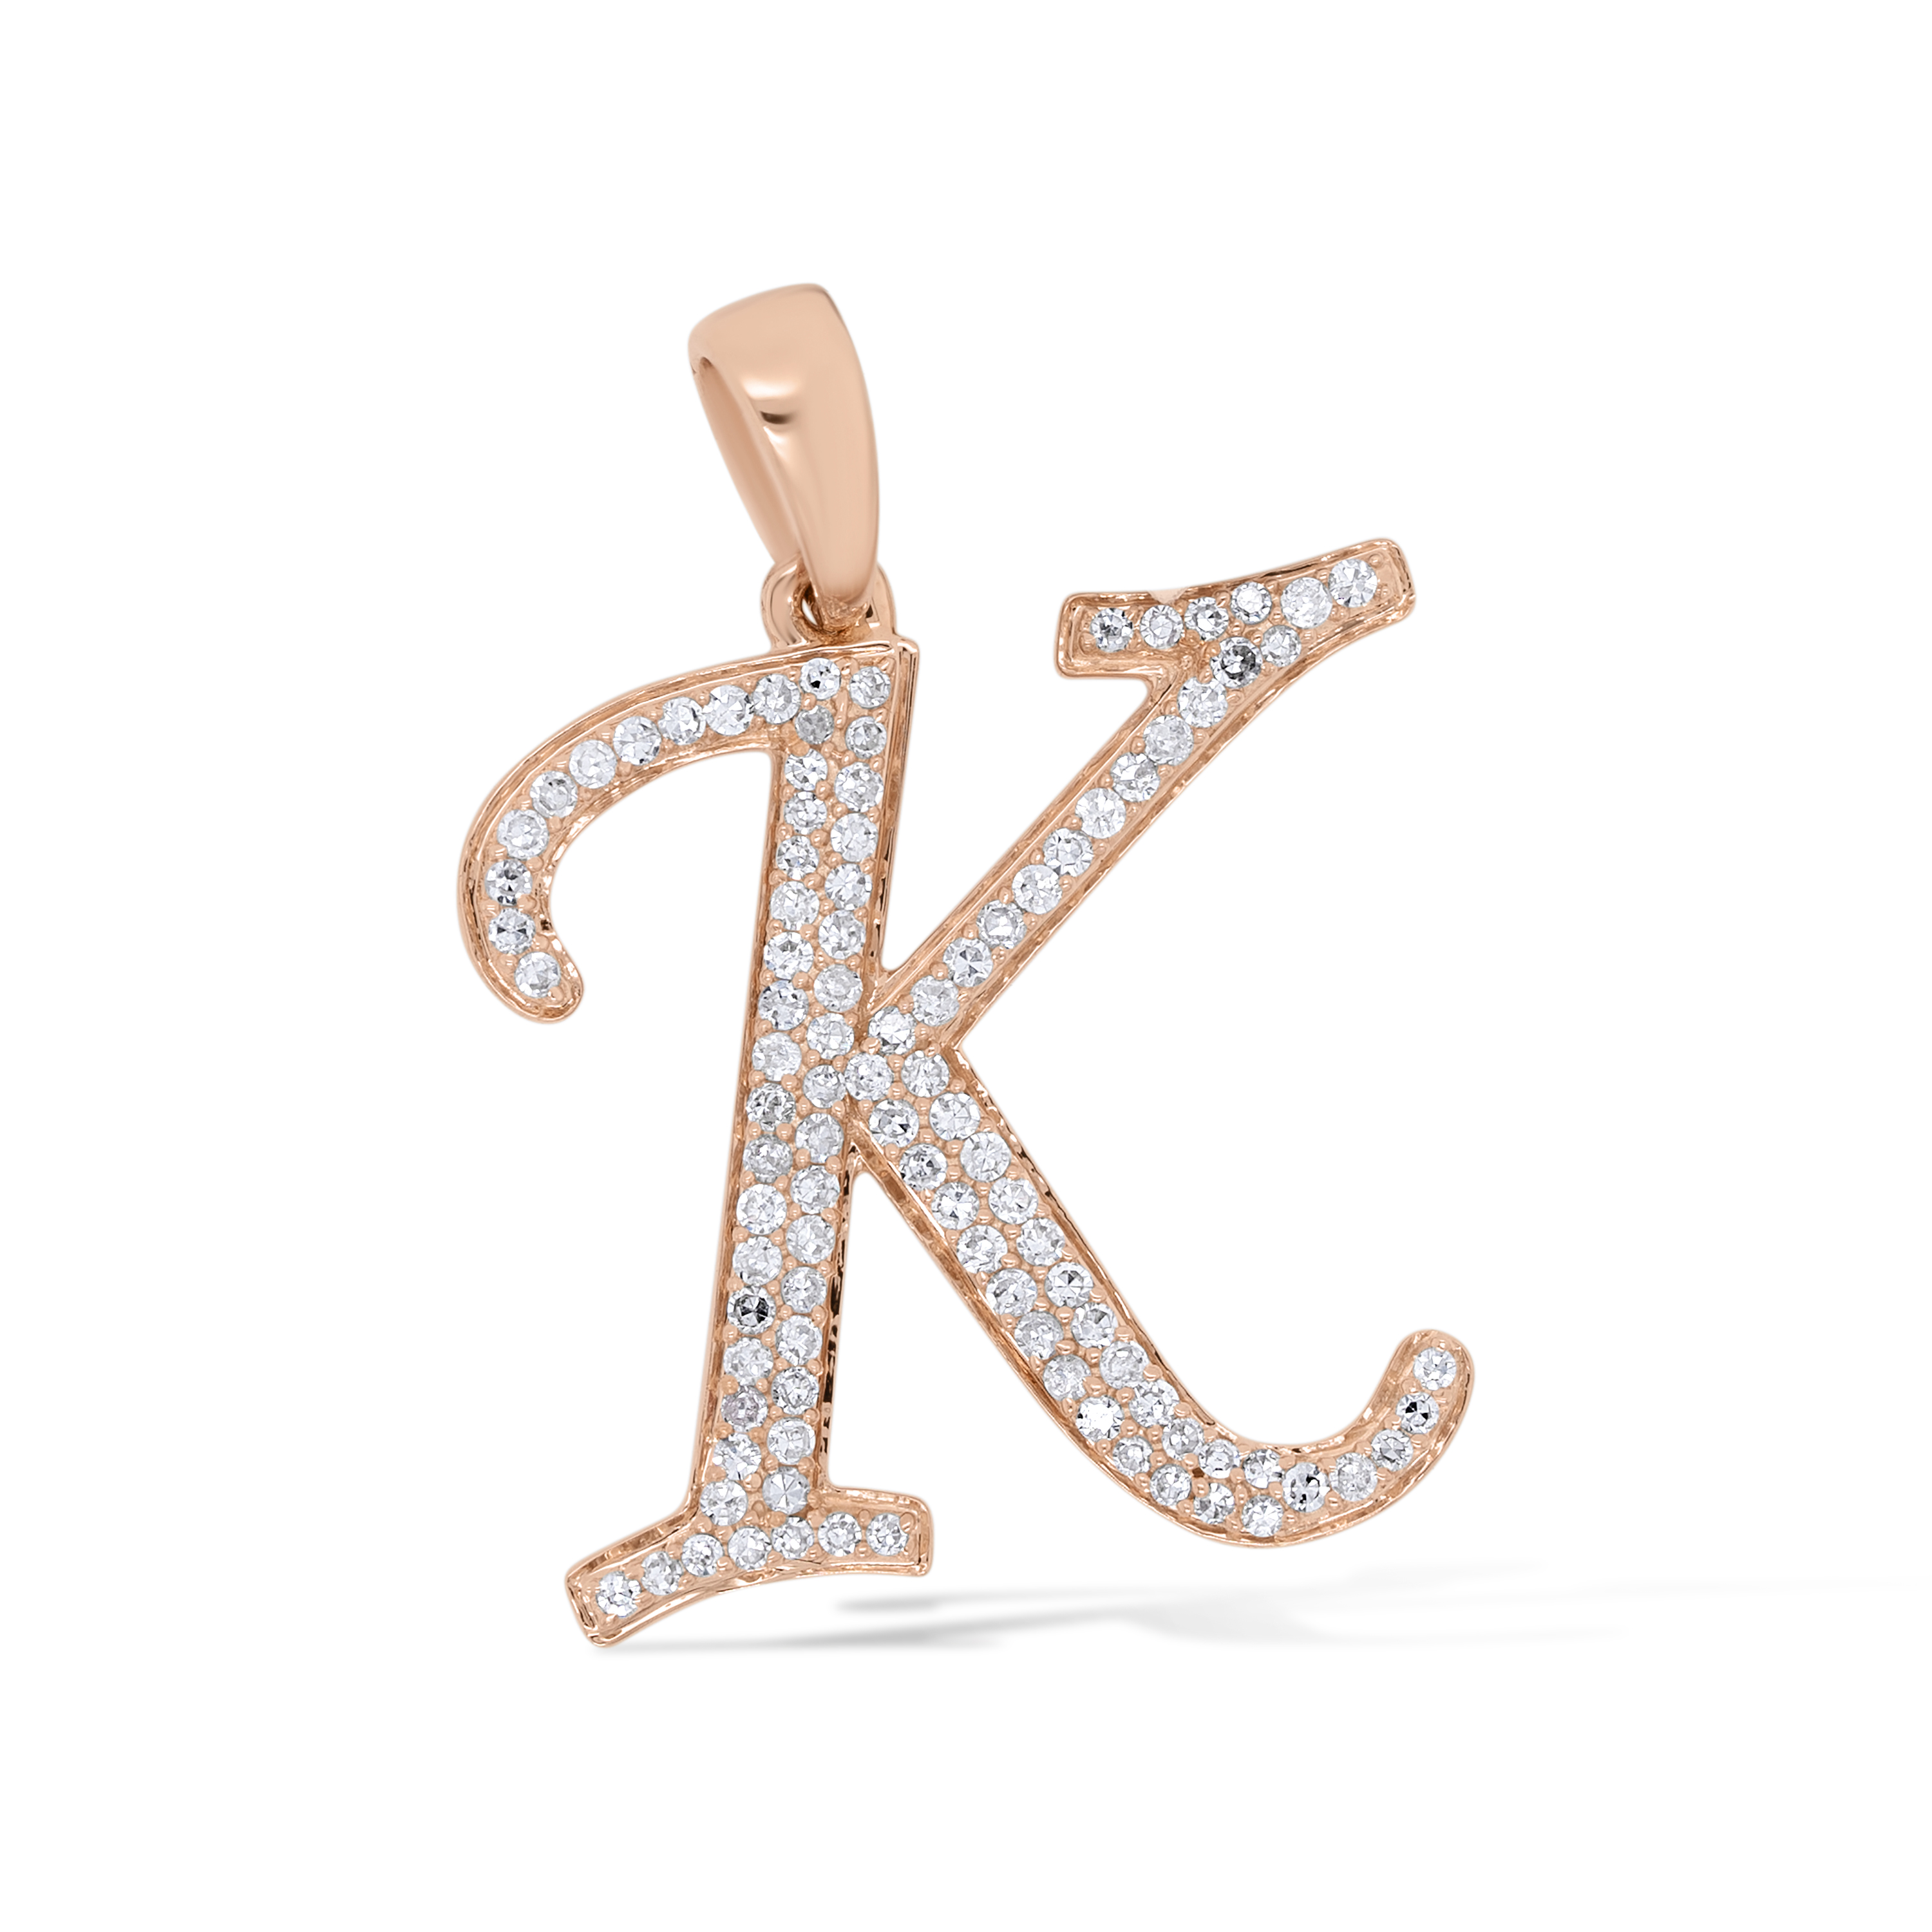 Diamond Letter K Pendant 0.25 ct. 14K Rose Gold